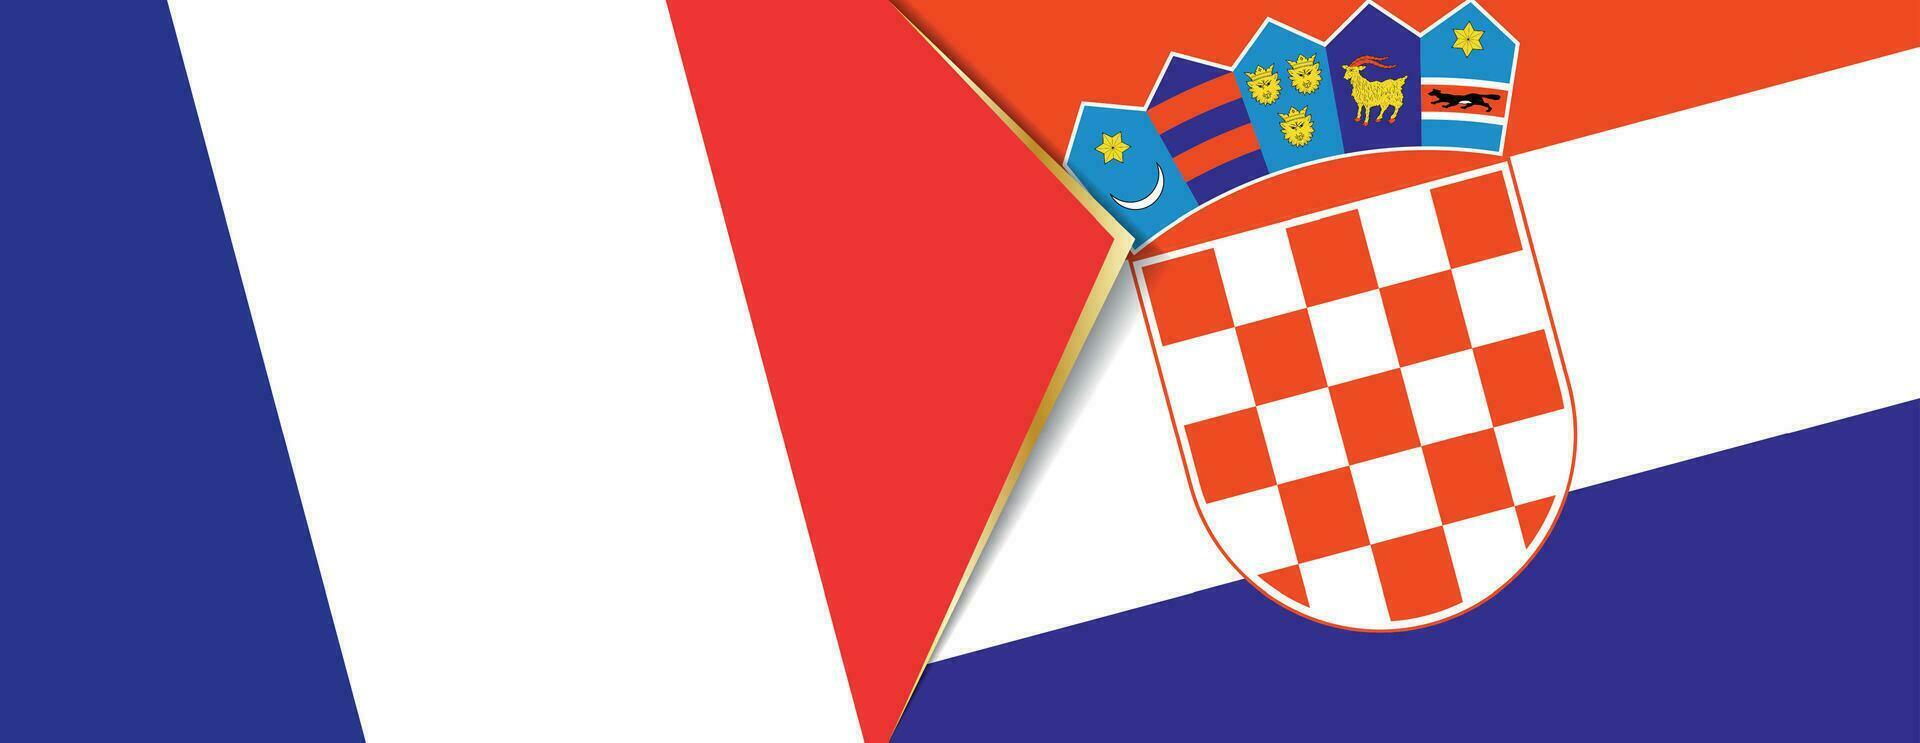 France et Croatie drapeaux, deux vecteur drapeaux.